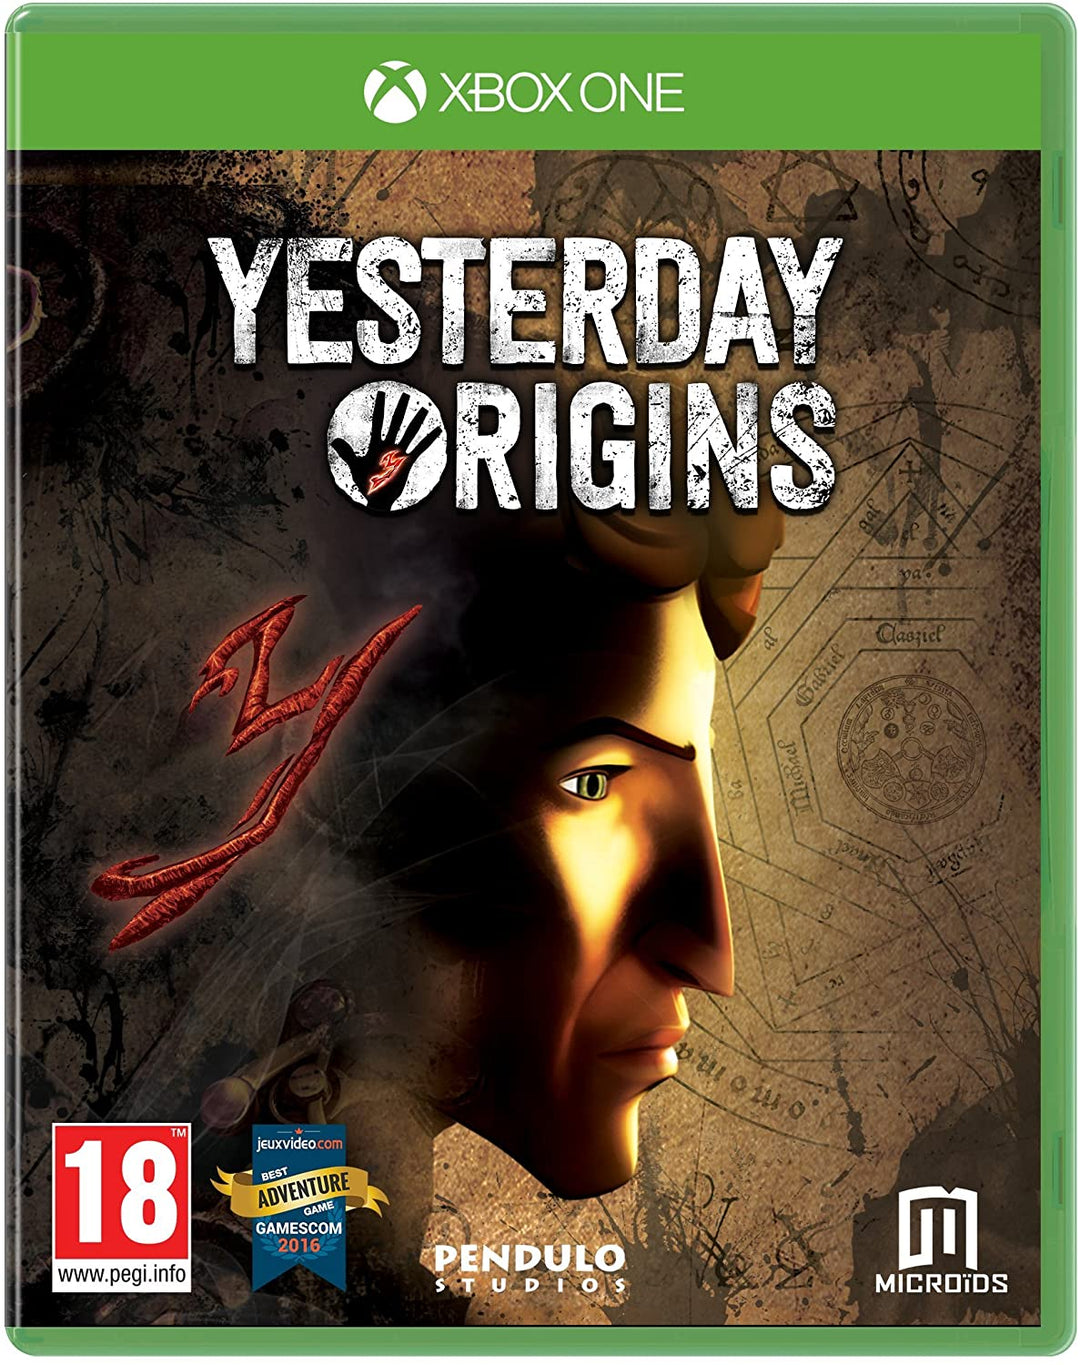 Le origini di ieri (Xbox One)